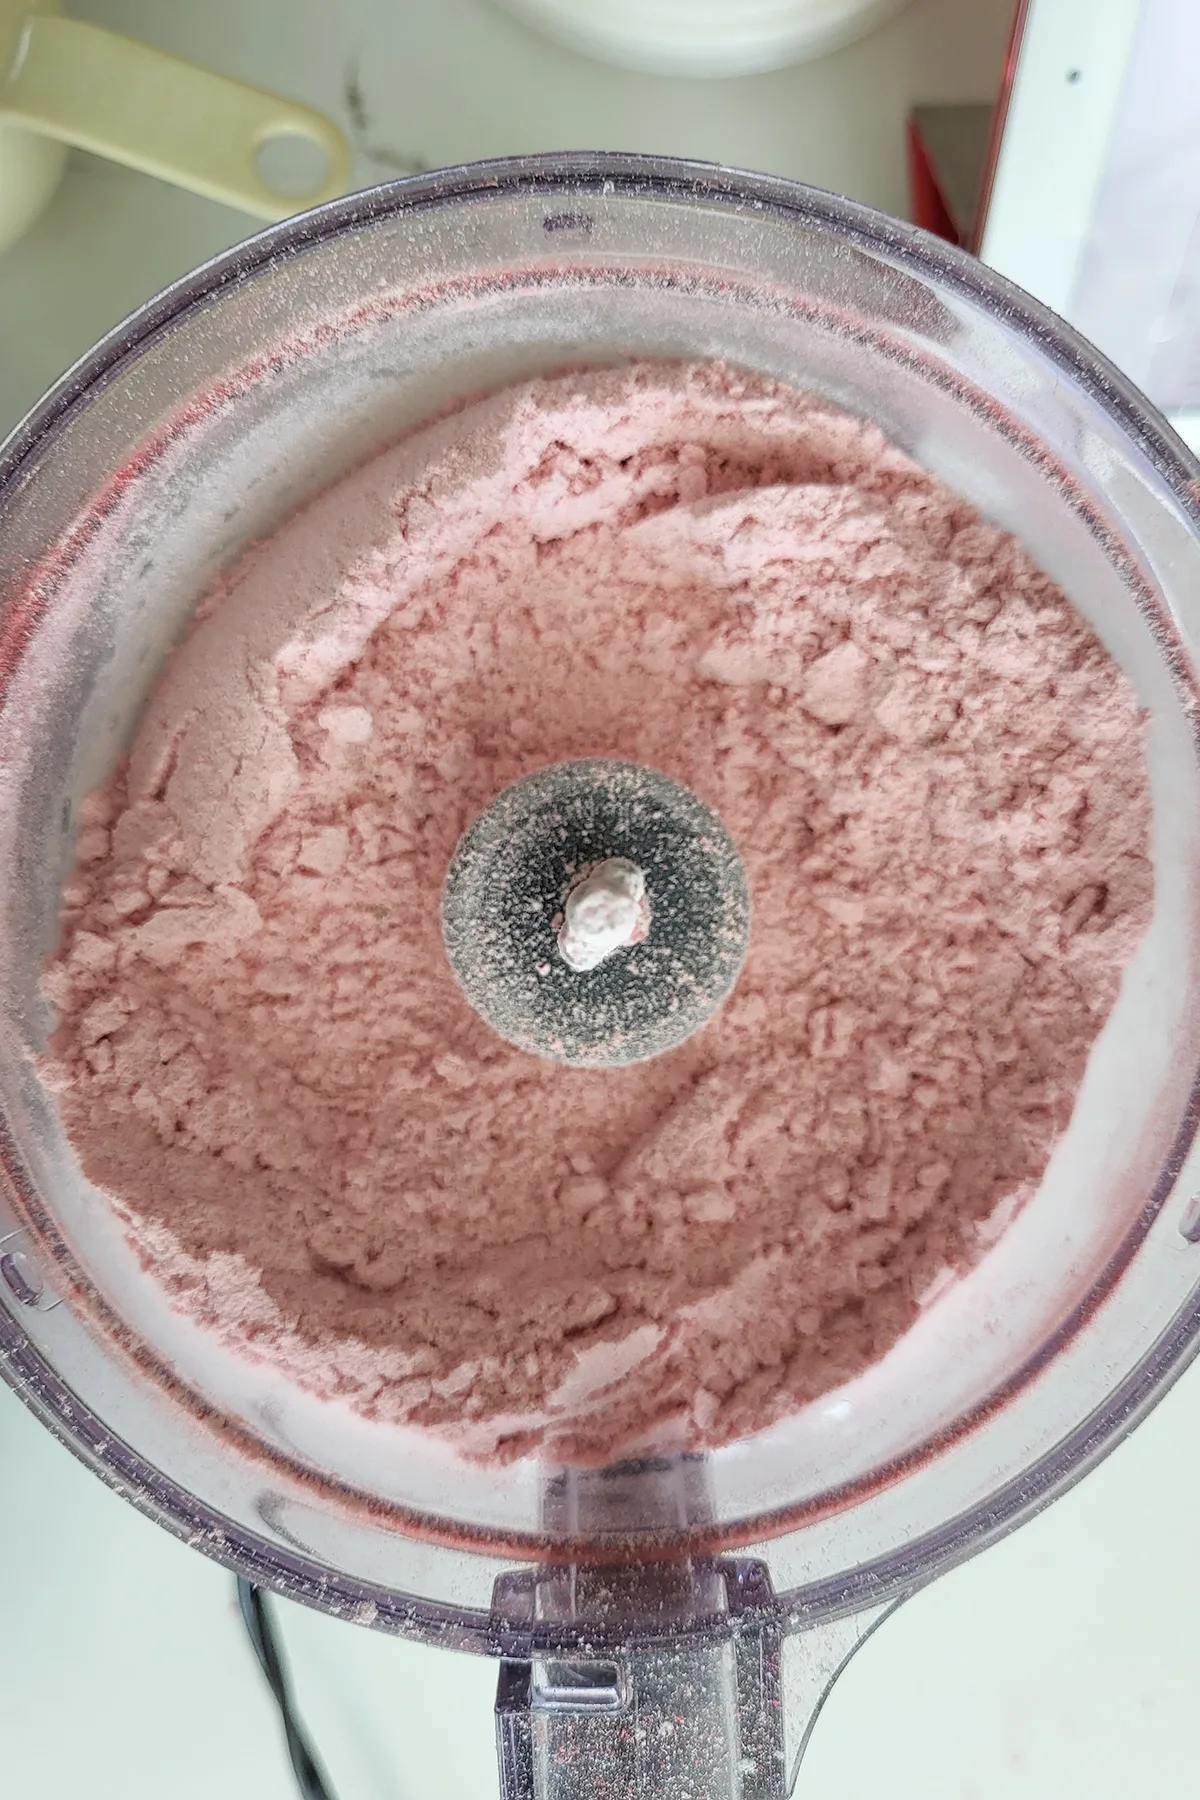 strawberry powder in a food processor.